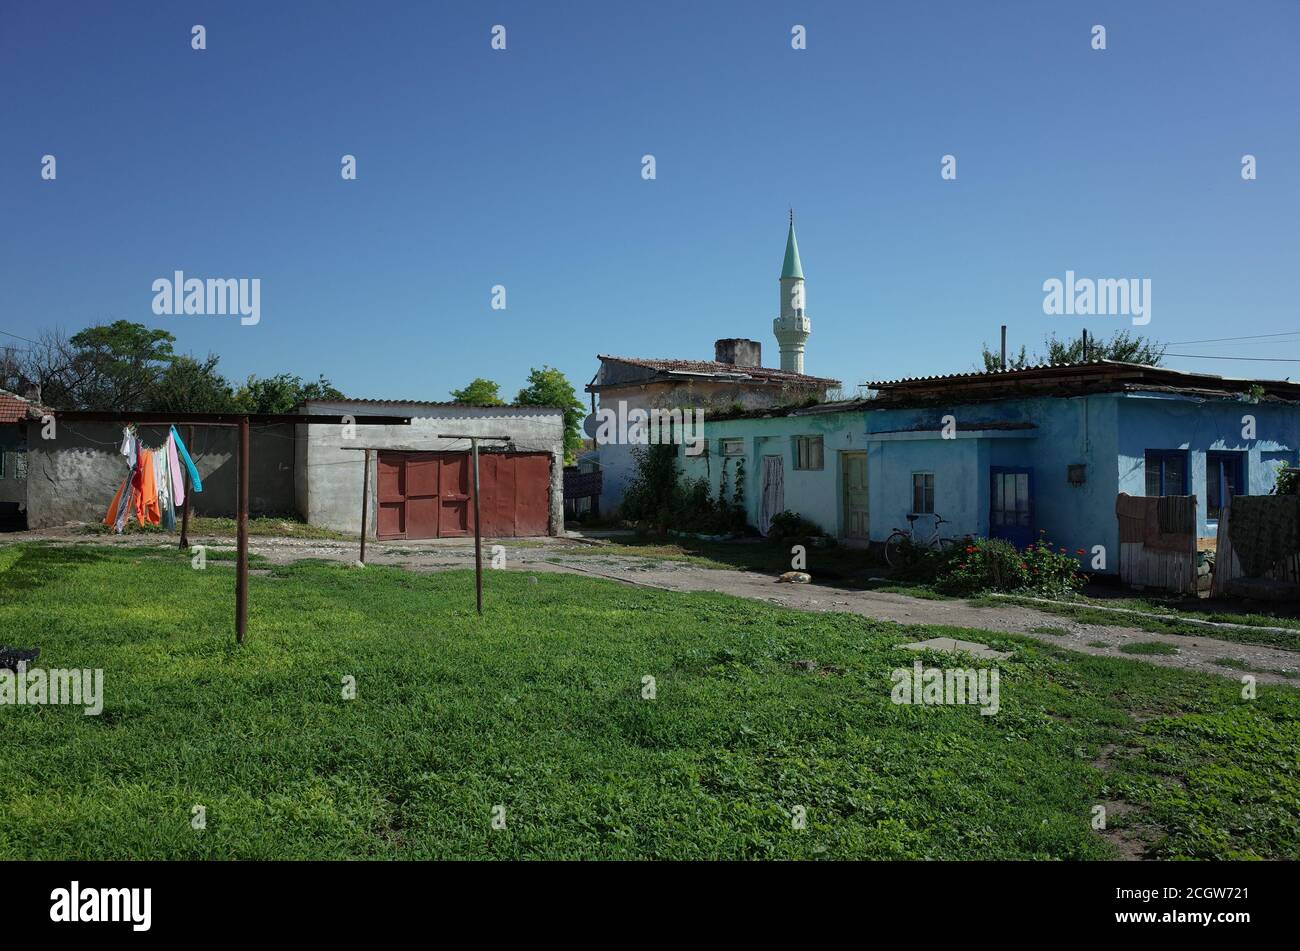 Piccola comunità cittadina che mostra multiculturalismo della regione di Dobrogea, con minareto da una moschea visibile tra le modeste case Foto Stock